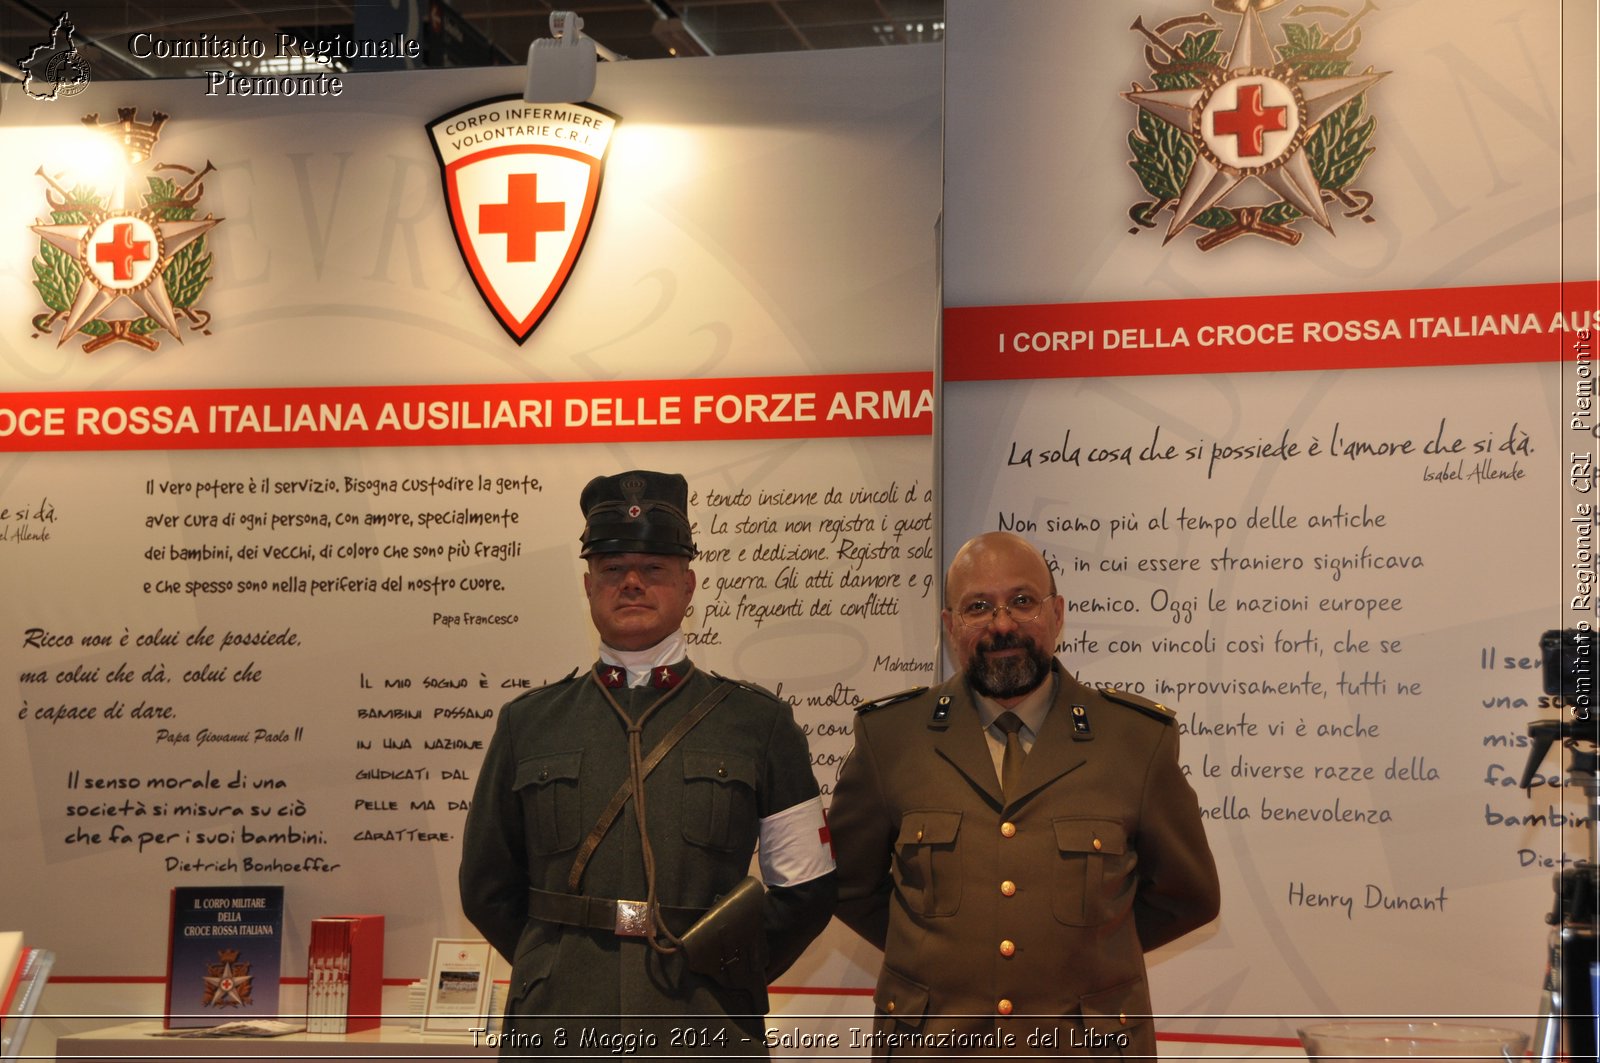 Torino 8 Maggio 2014 - Salone Internazionale del Libro - Comitato Regionale del Piemonte